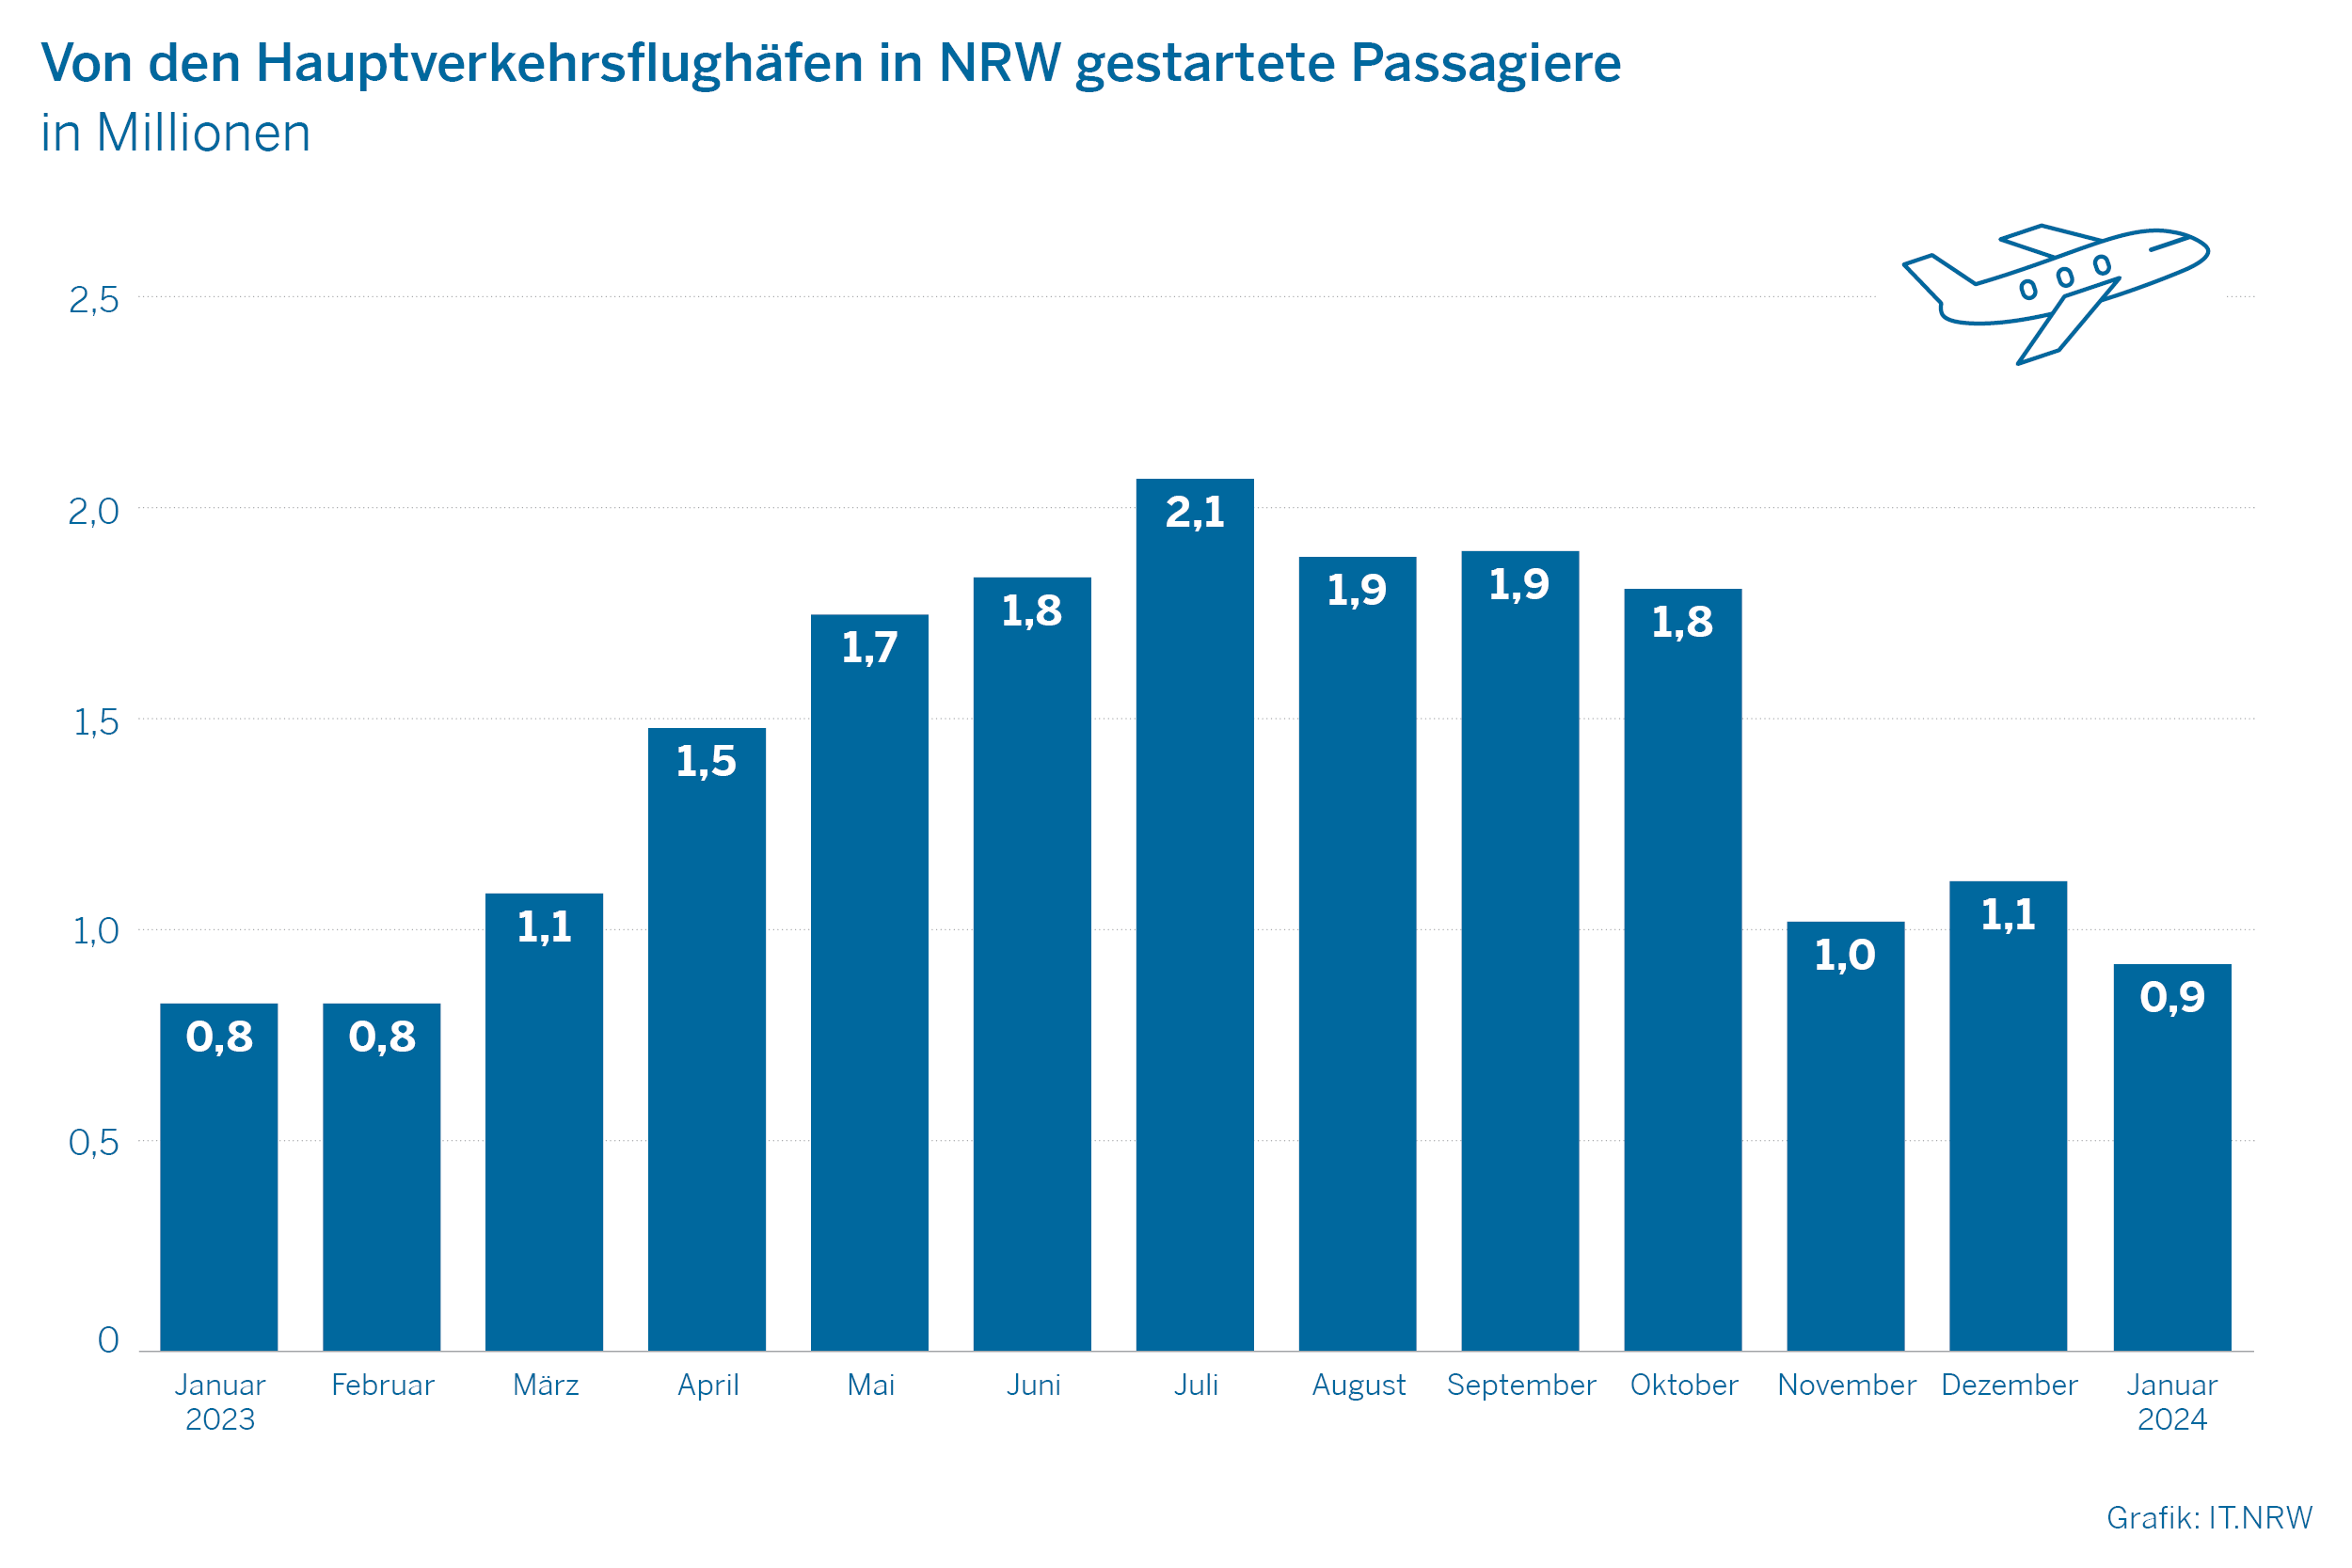 Von den Hauptverkehrsflughäfen in NRW gestartete Passagiere